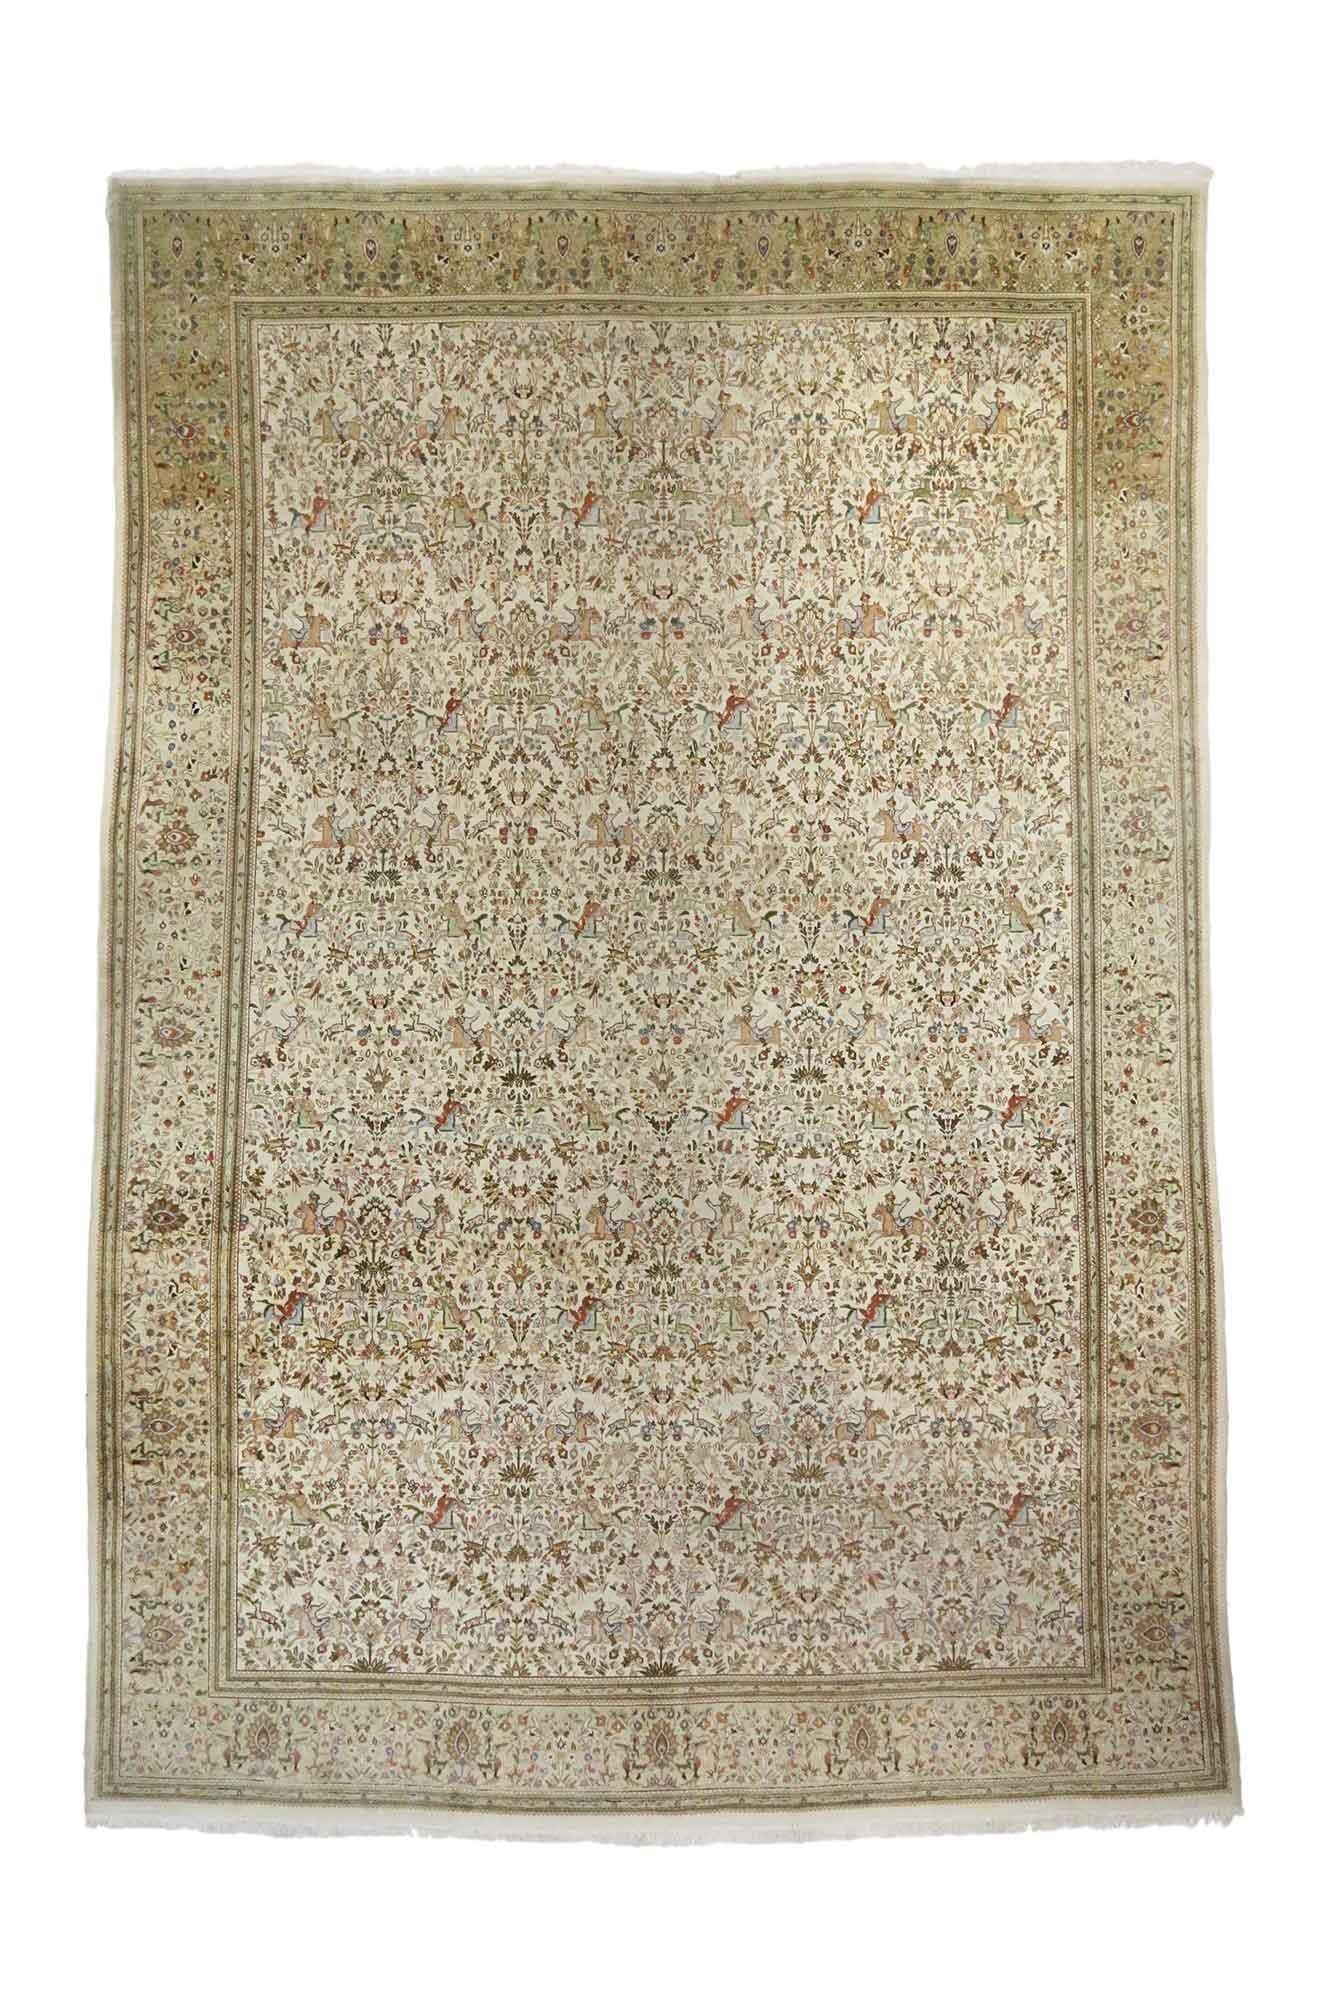 soft neutral rug